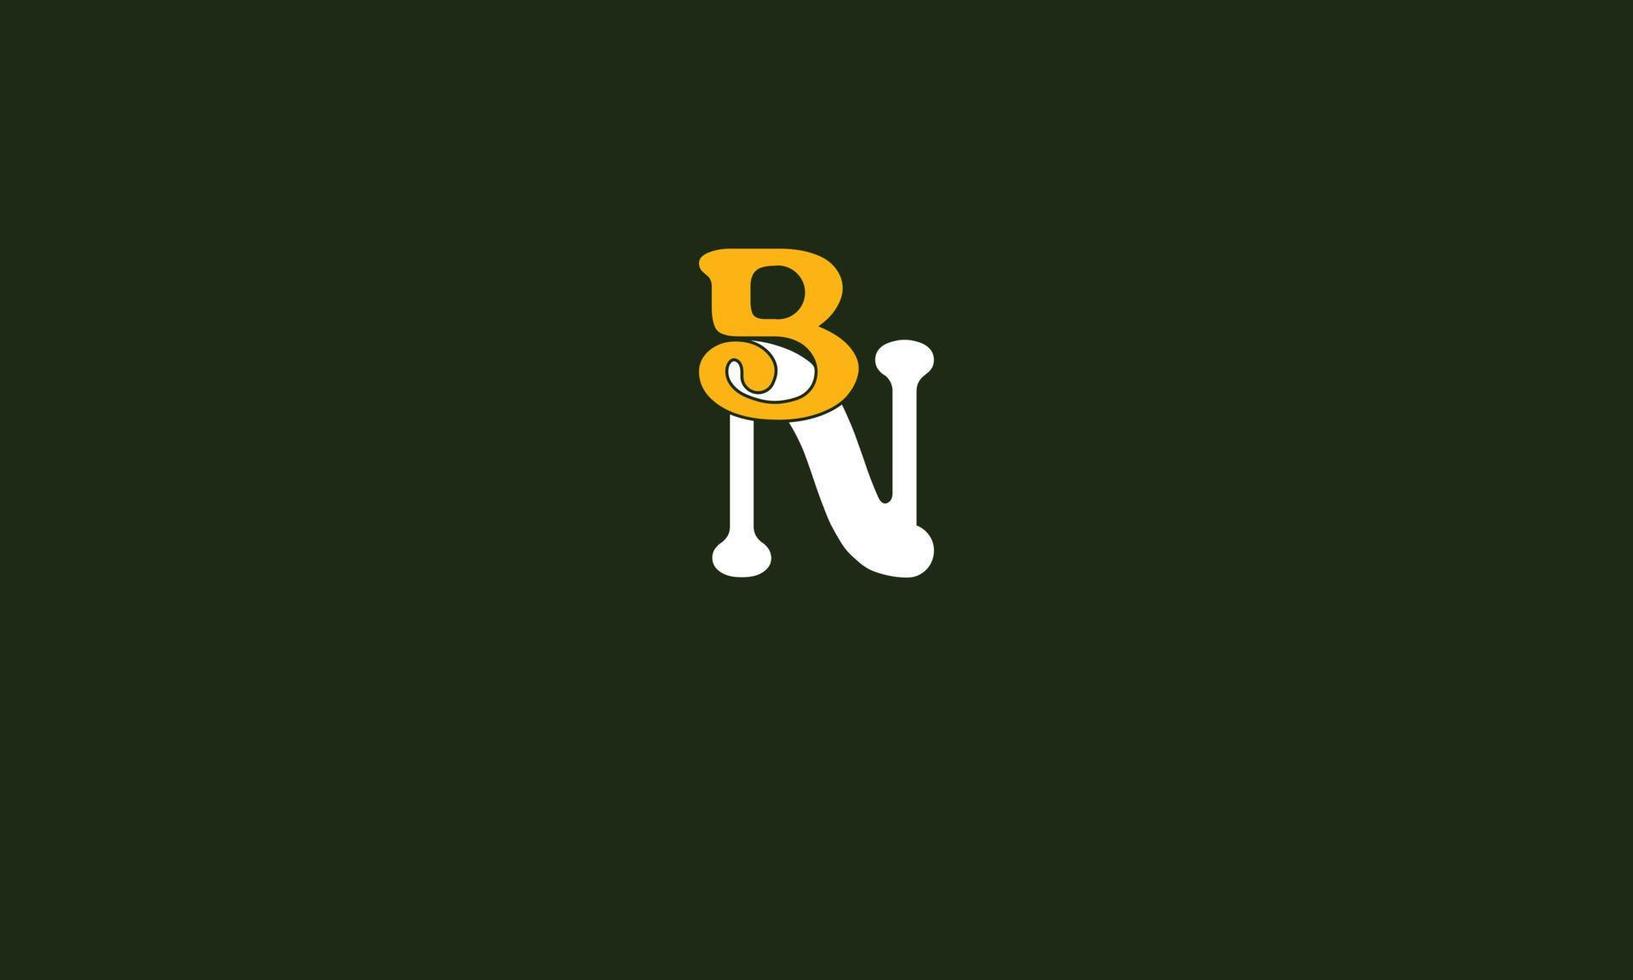 letras do alfabeto iniciais monograma logotipo bn, nb, b e n vetor